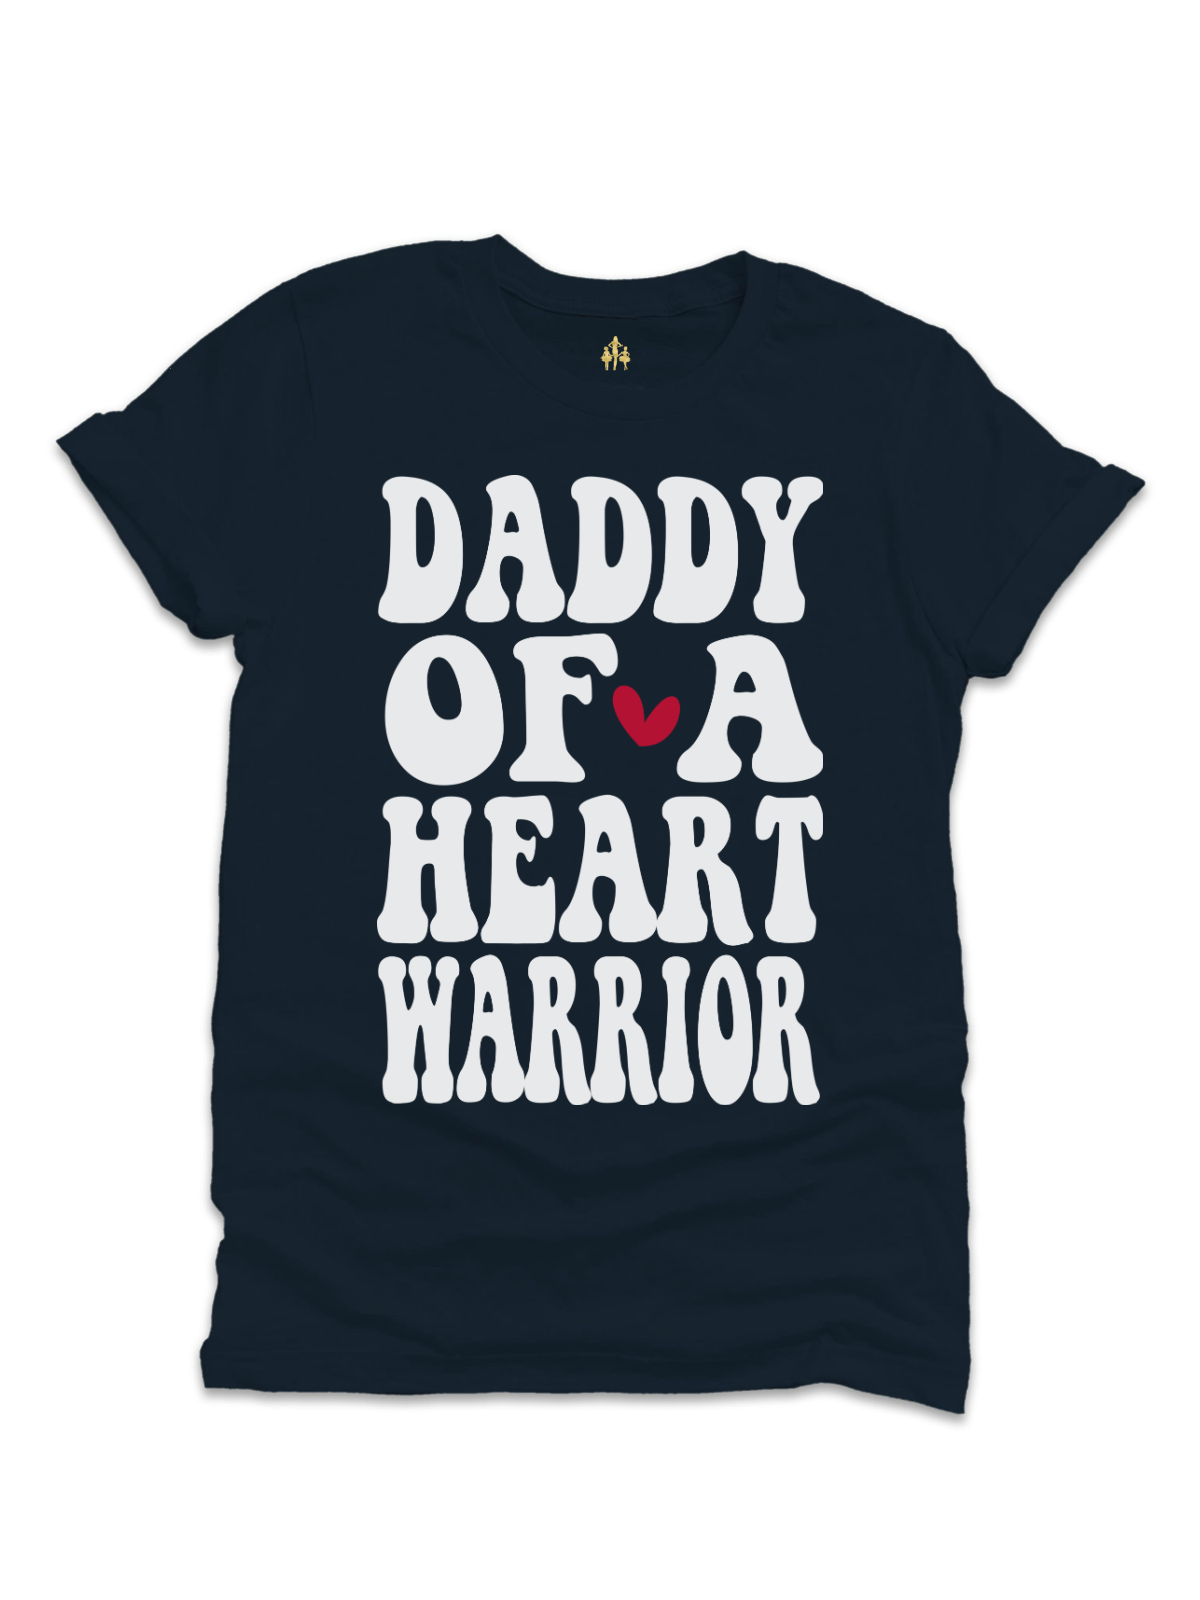 Daddy of a Heart Warrior Mens CHD Awareness Shirt